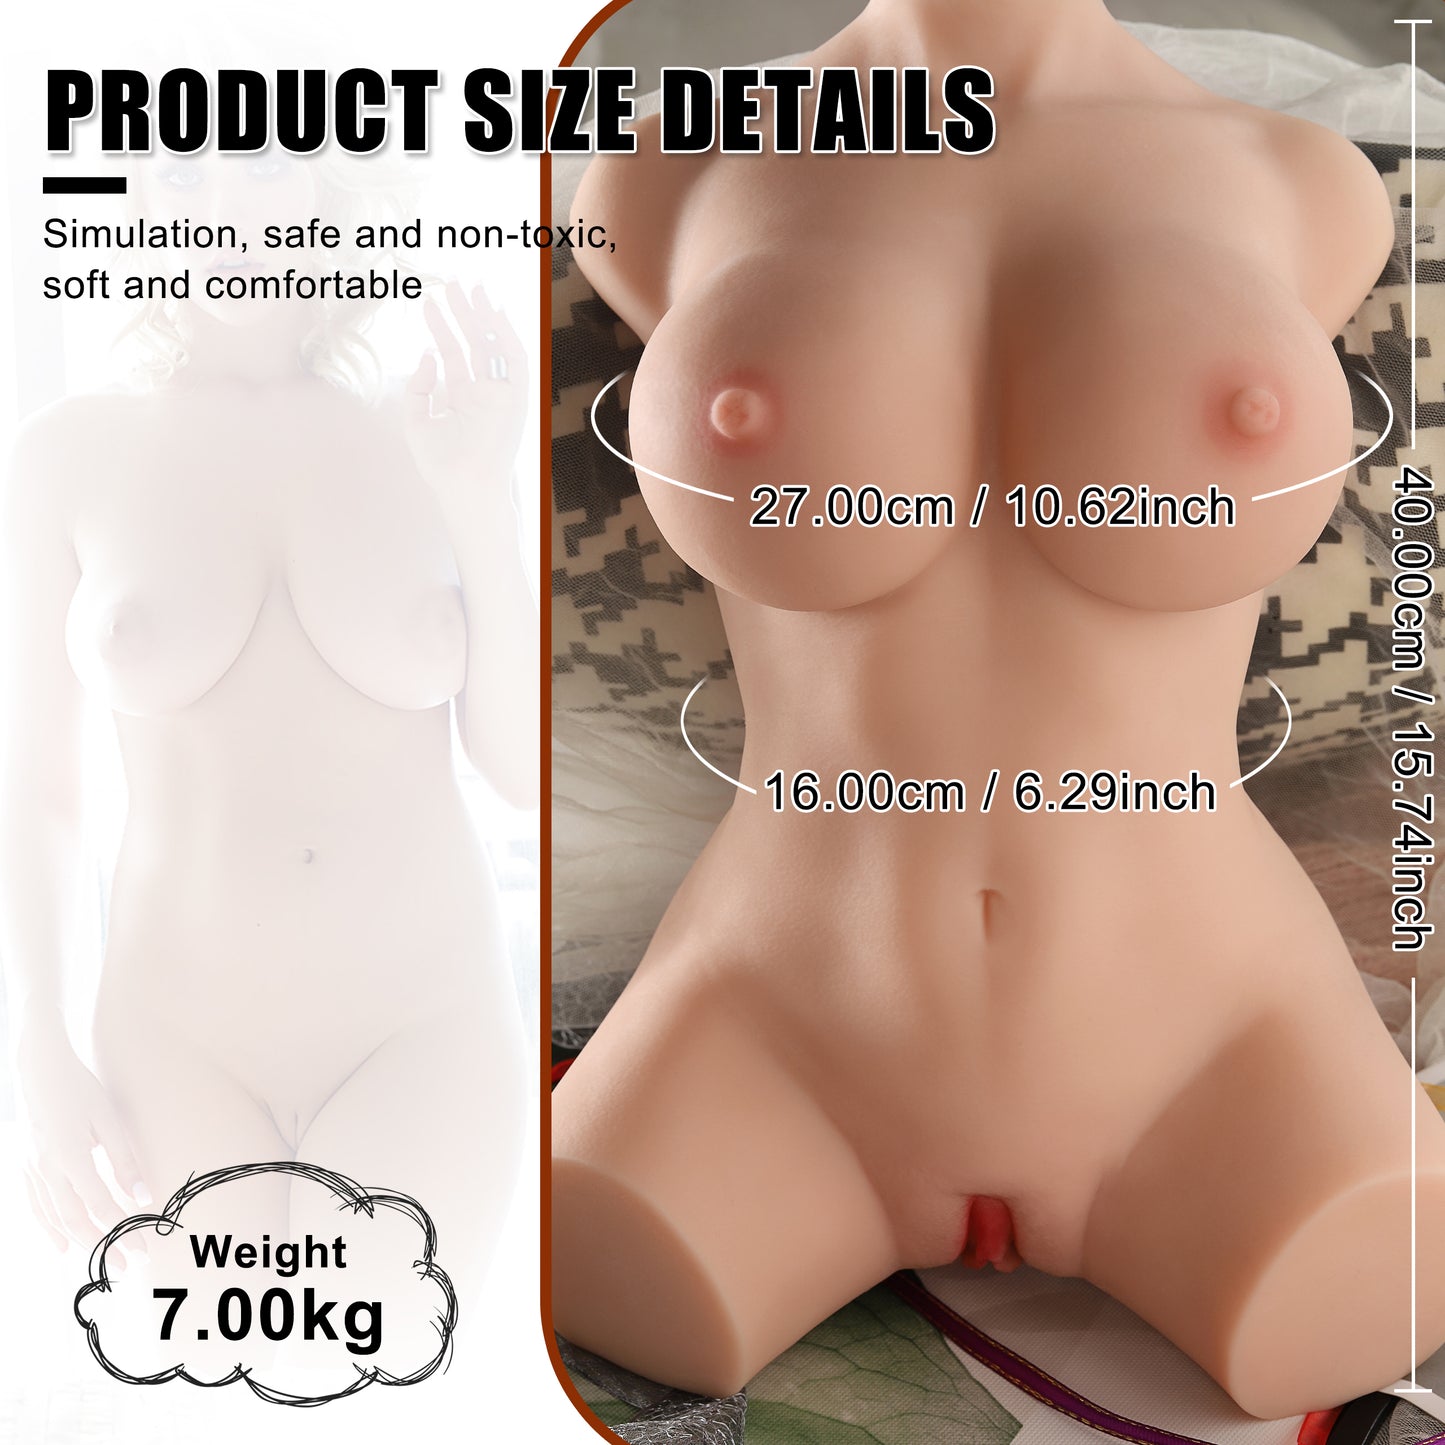 Merida Torso Sex Doll 15.43LB Life Size Sucking Vibrating Male Masturbator Big Boobs Love Toys